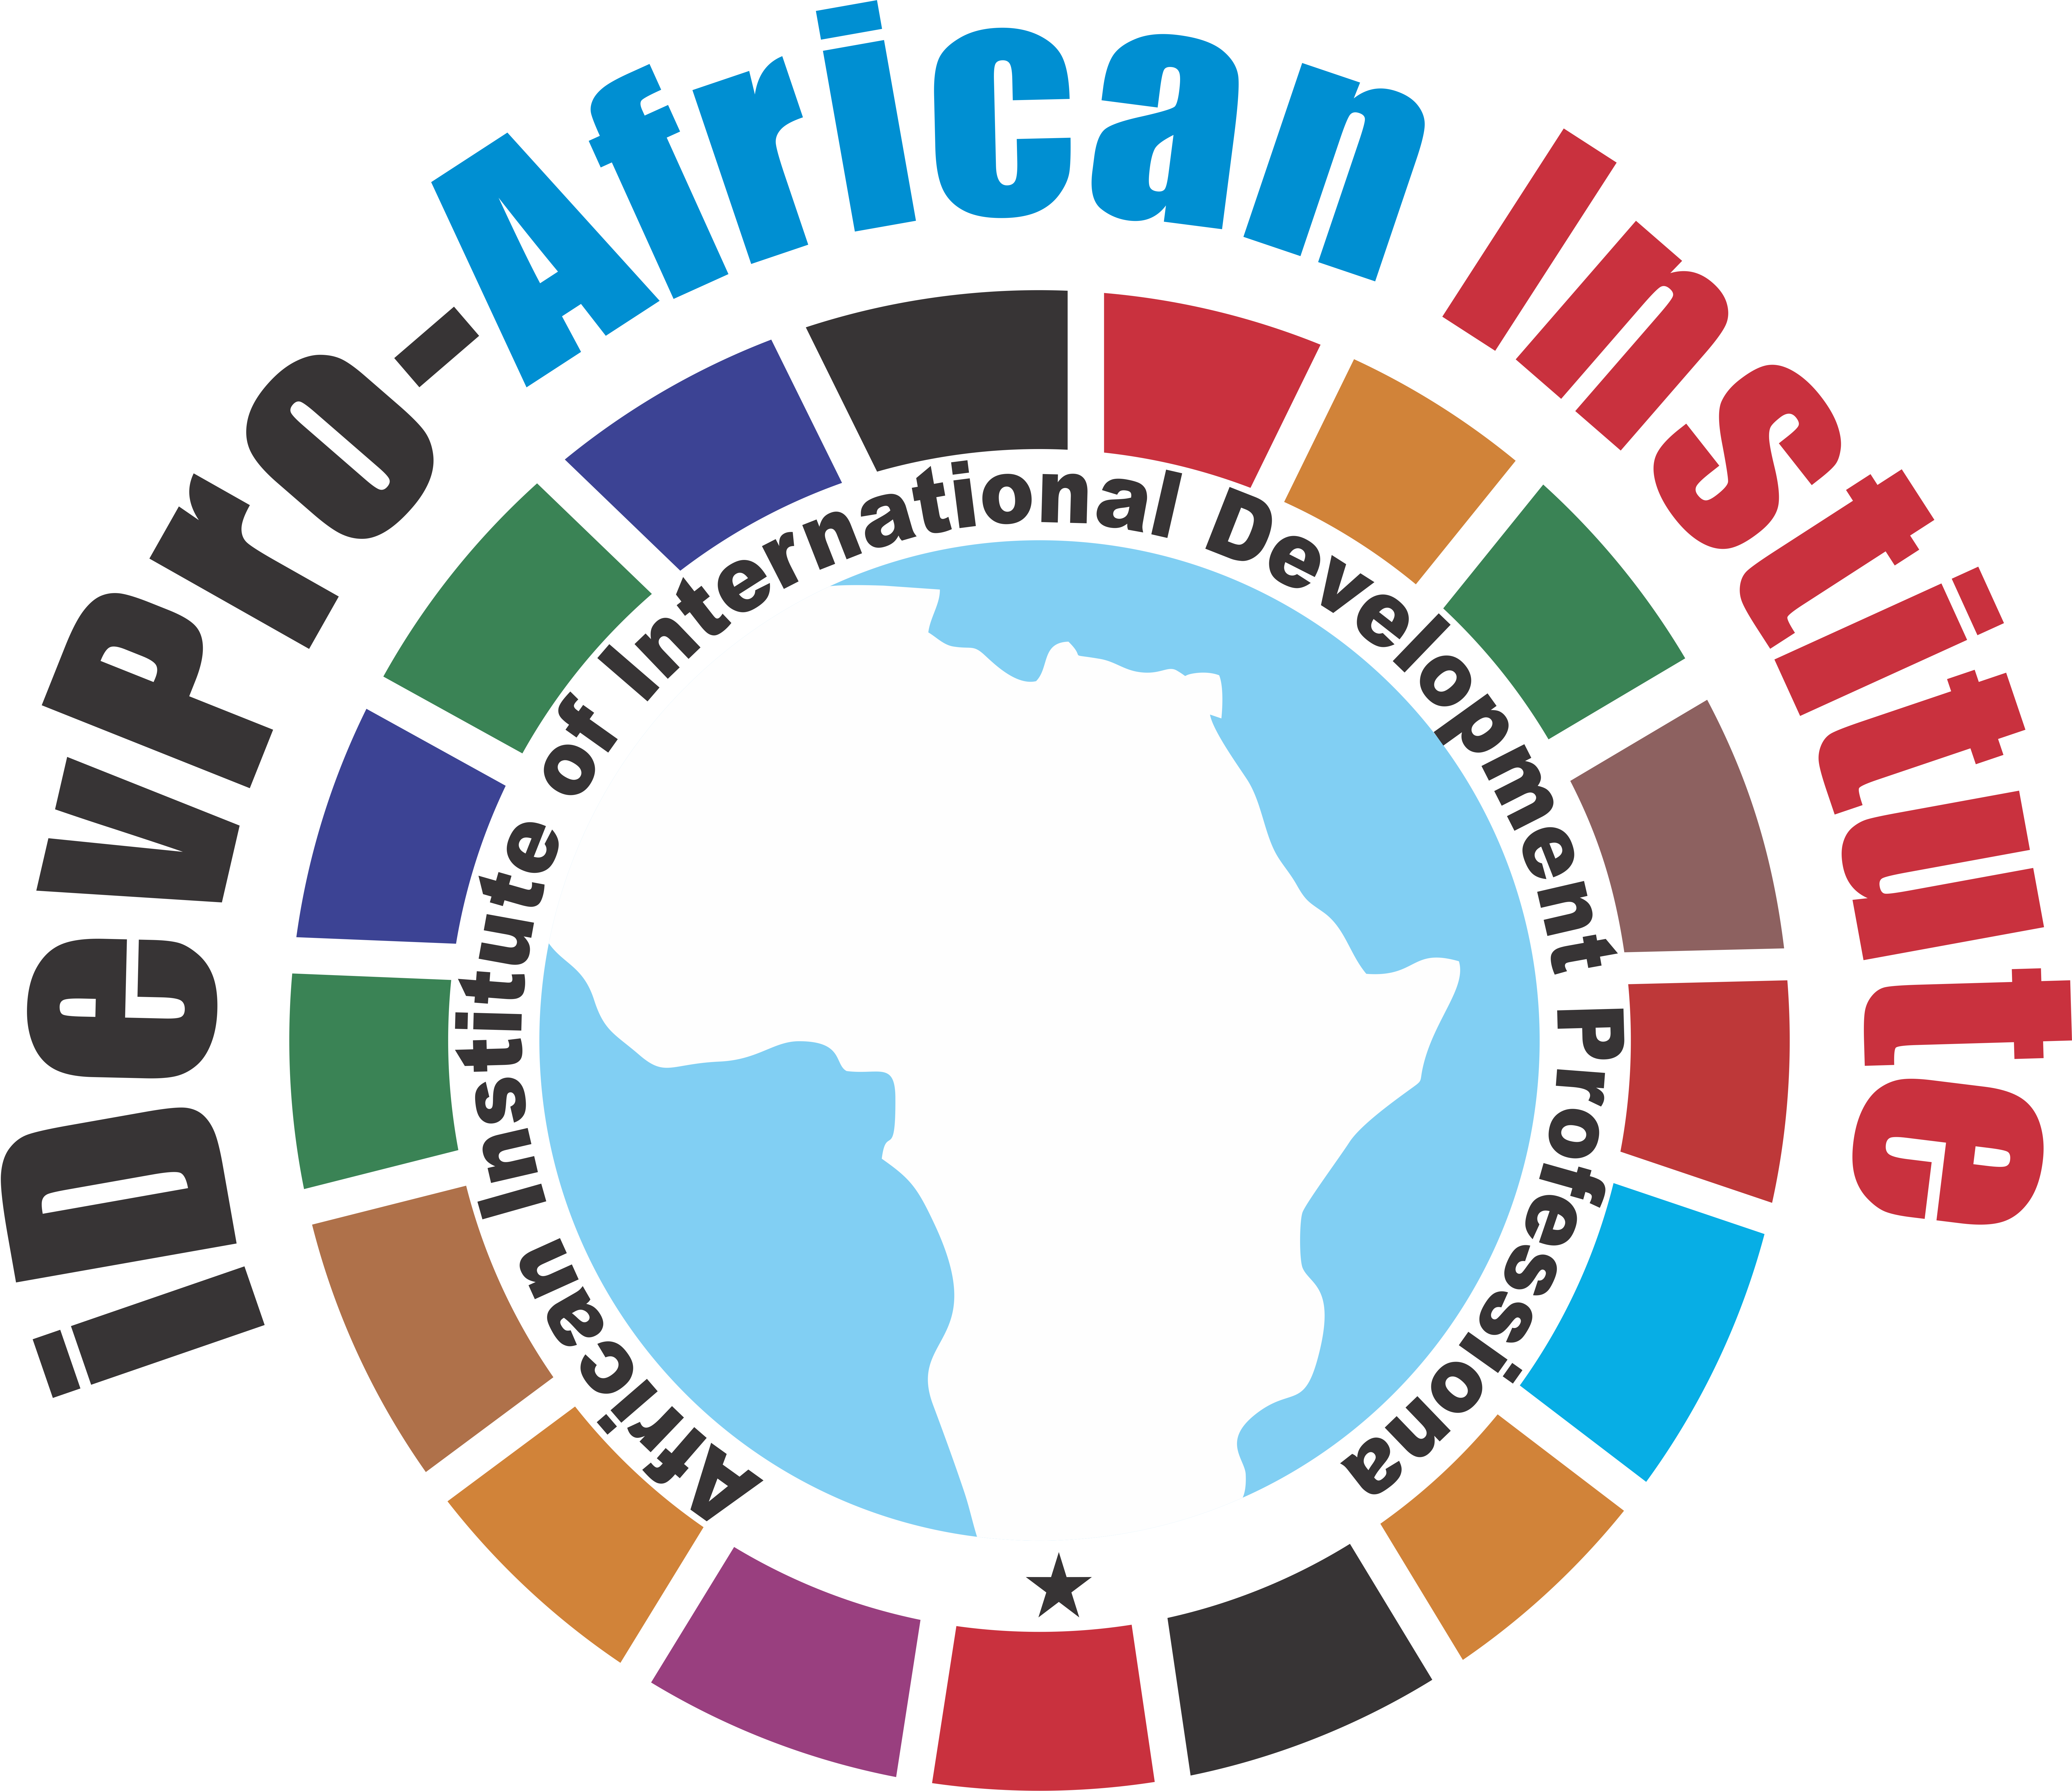 iDevPro-African Institute